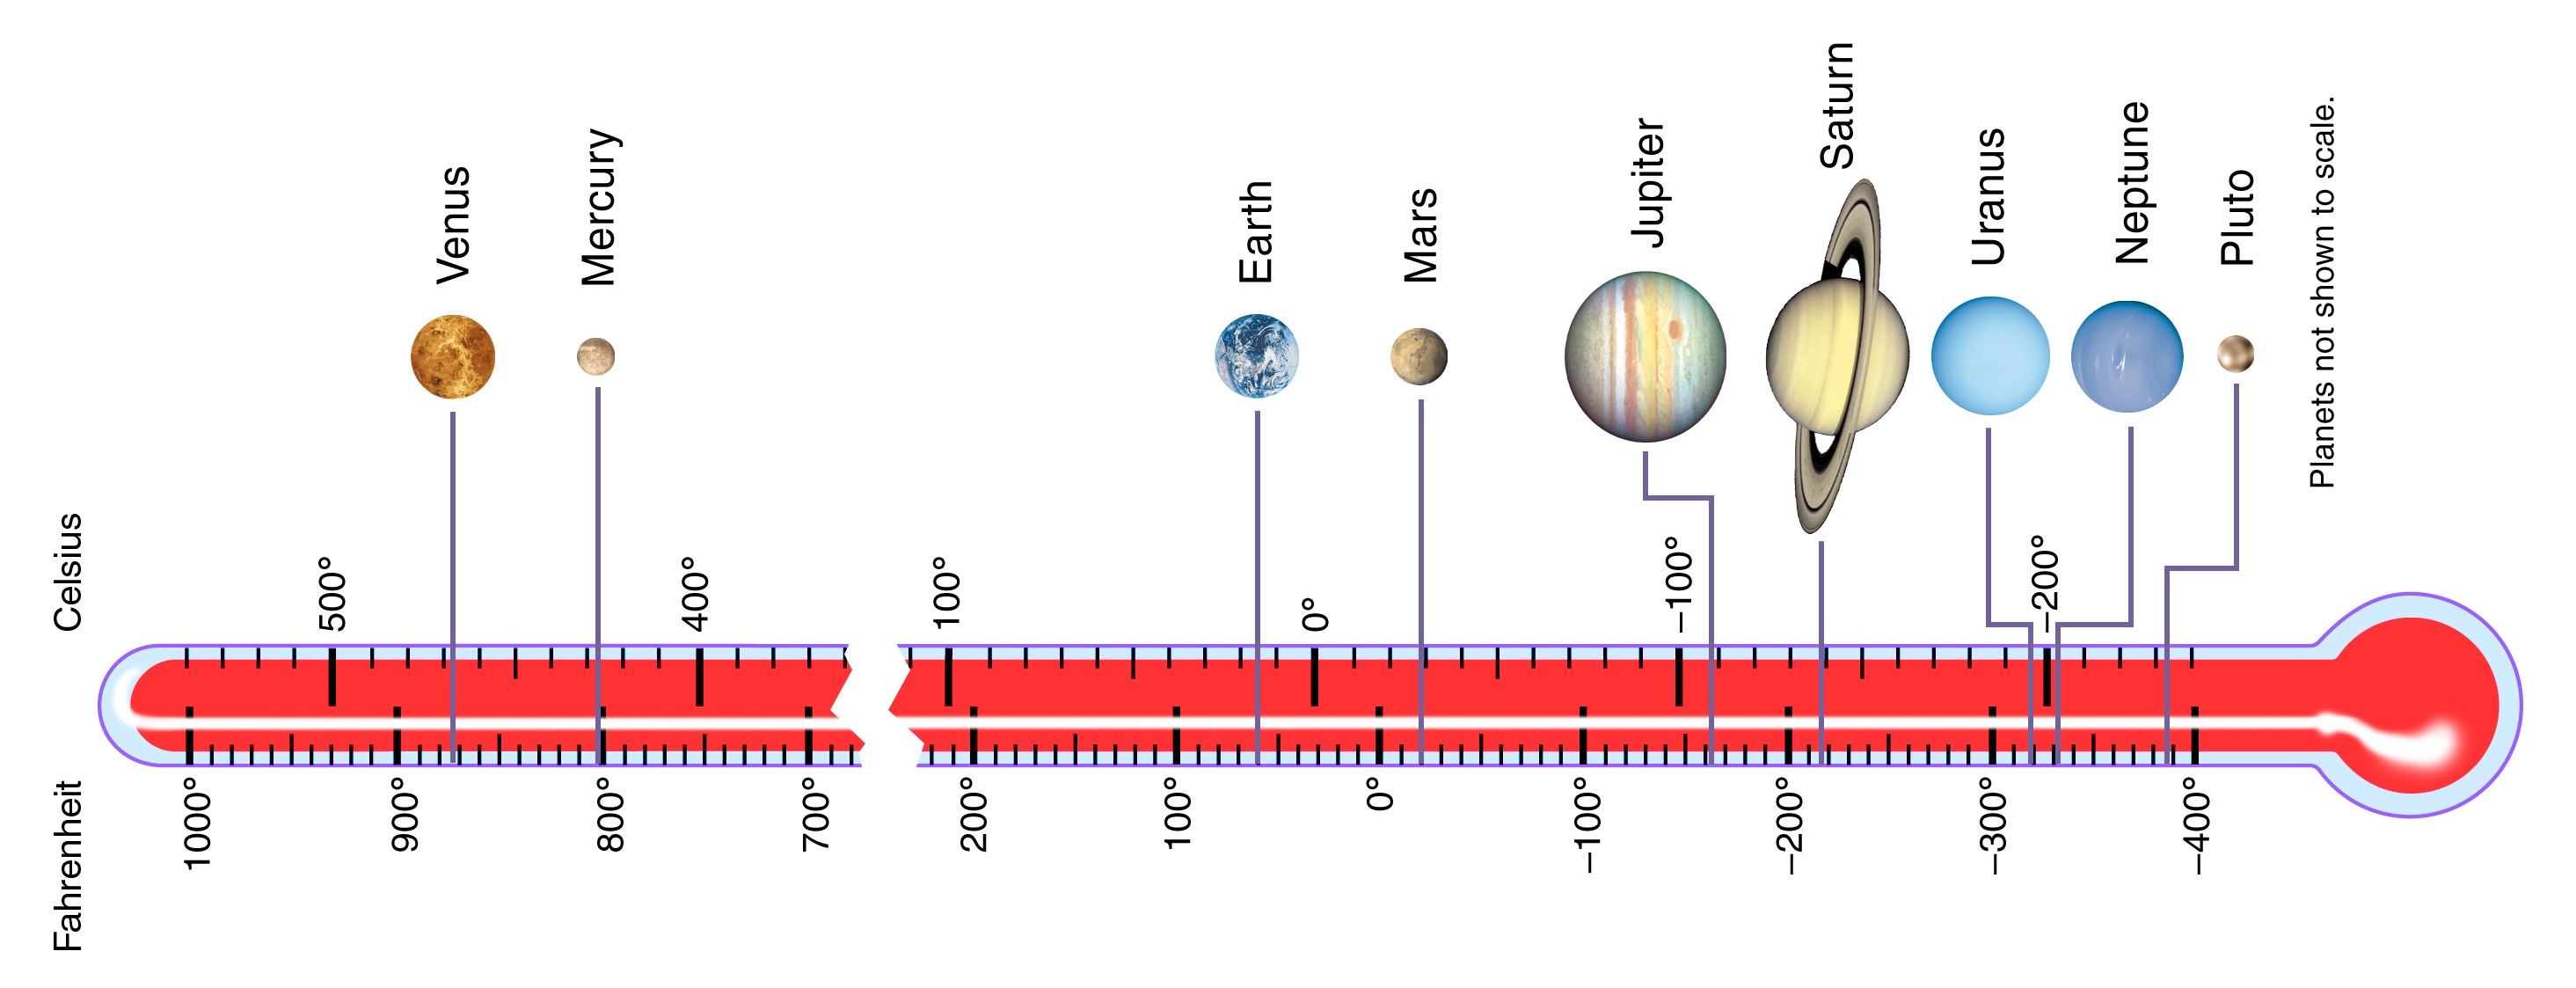 Solar System Temperatures